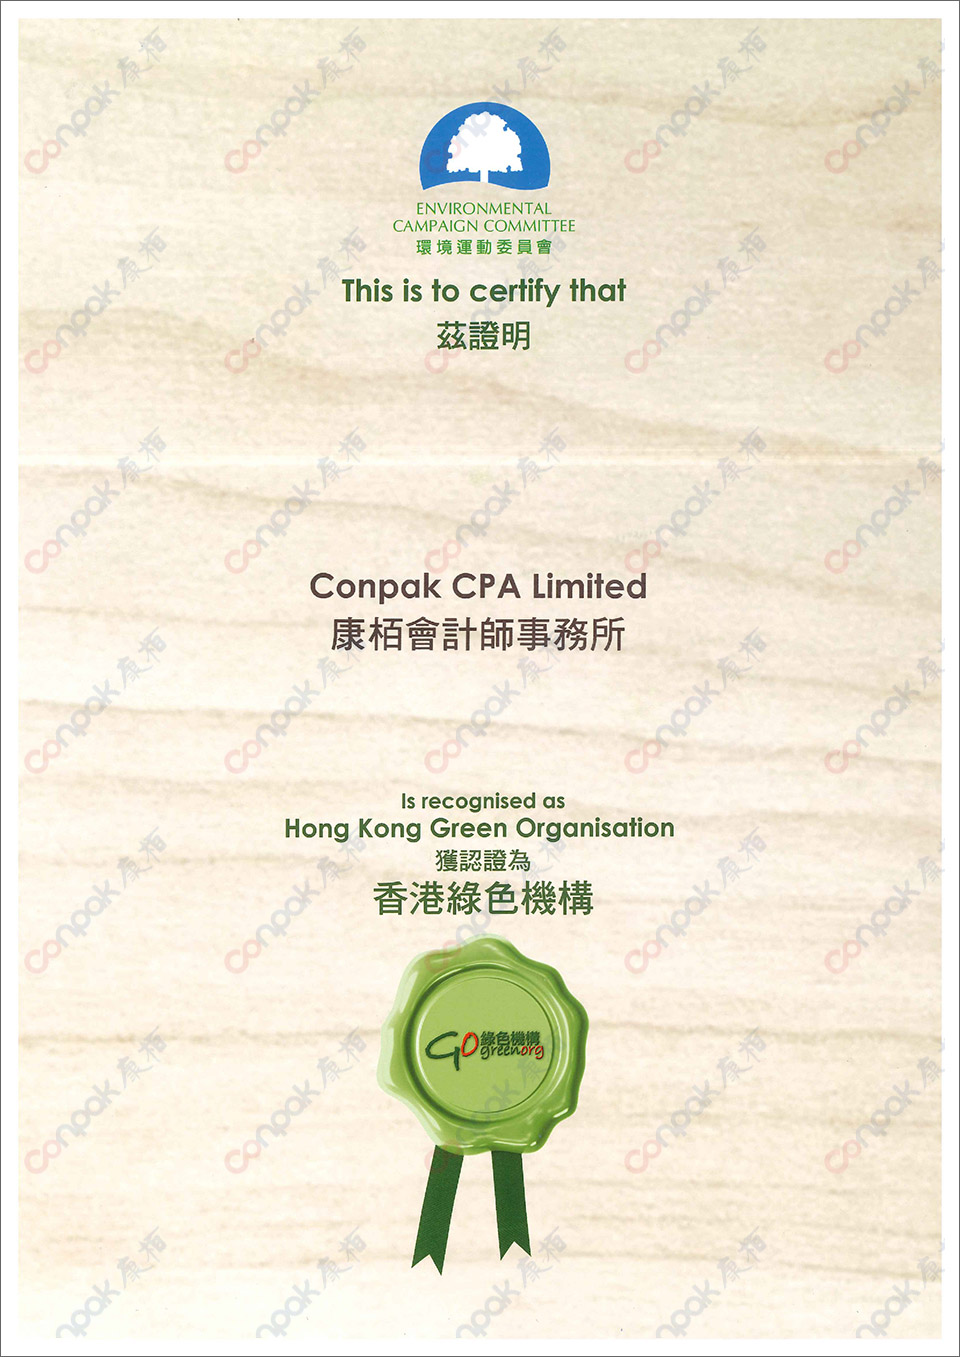 再获颁“香港环境卓越大奖暨香港绿色机构认证”证书